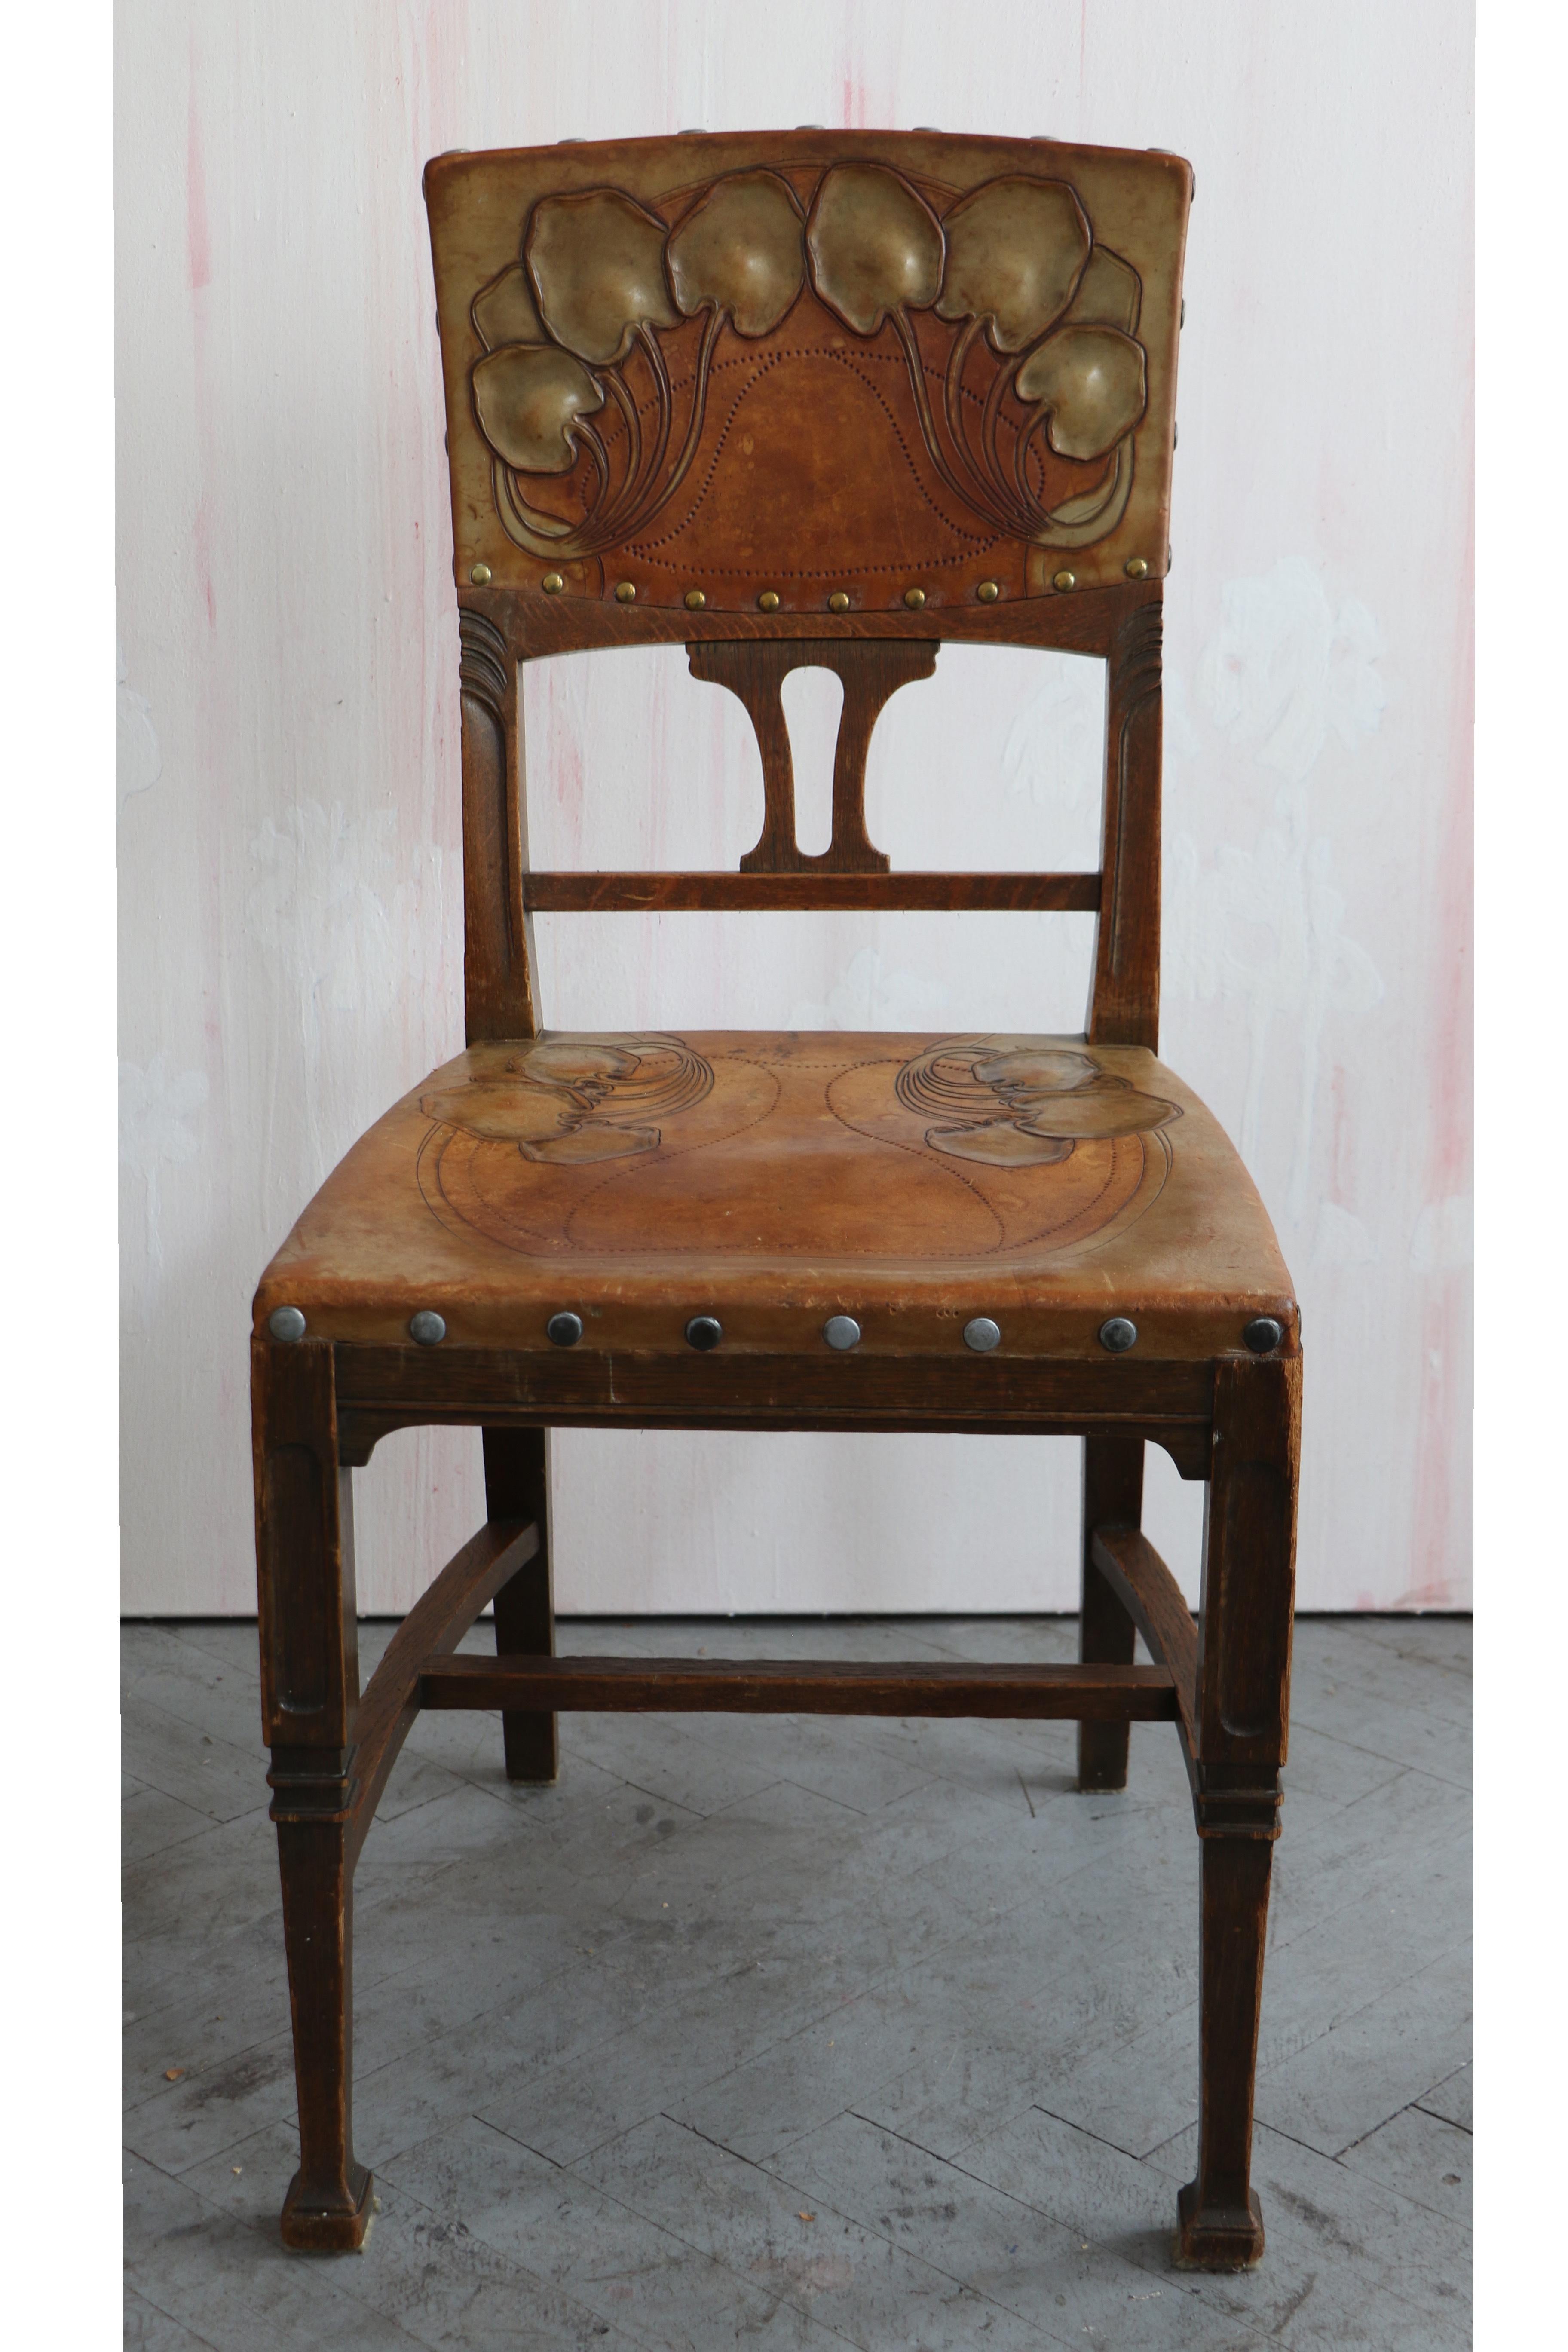 Bonjour,
Cet ensemble exceptionnel de douze chaises en chêne massif de style Art nouveau viennois, datant d'environ 1910, témoigne d'un haut niveau d'artisanat et d'un design élégant.

L'Art nouveau viennois est une tendance de l'art, de